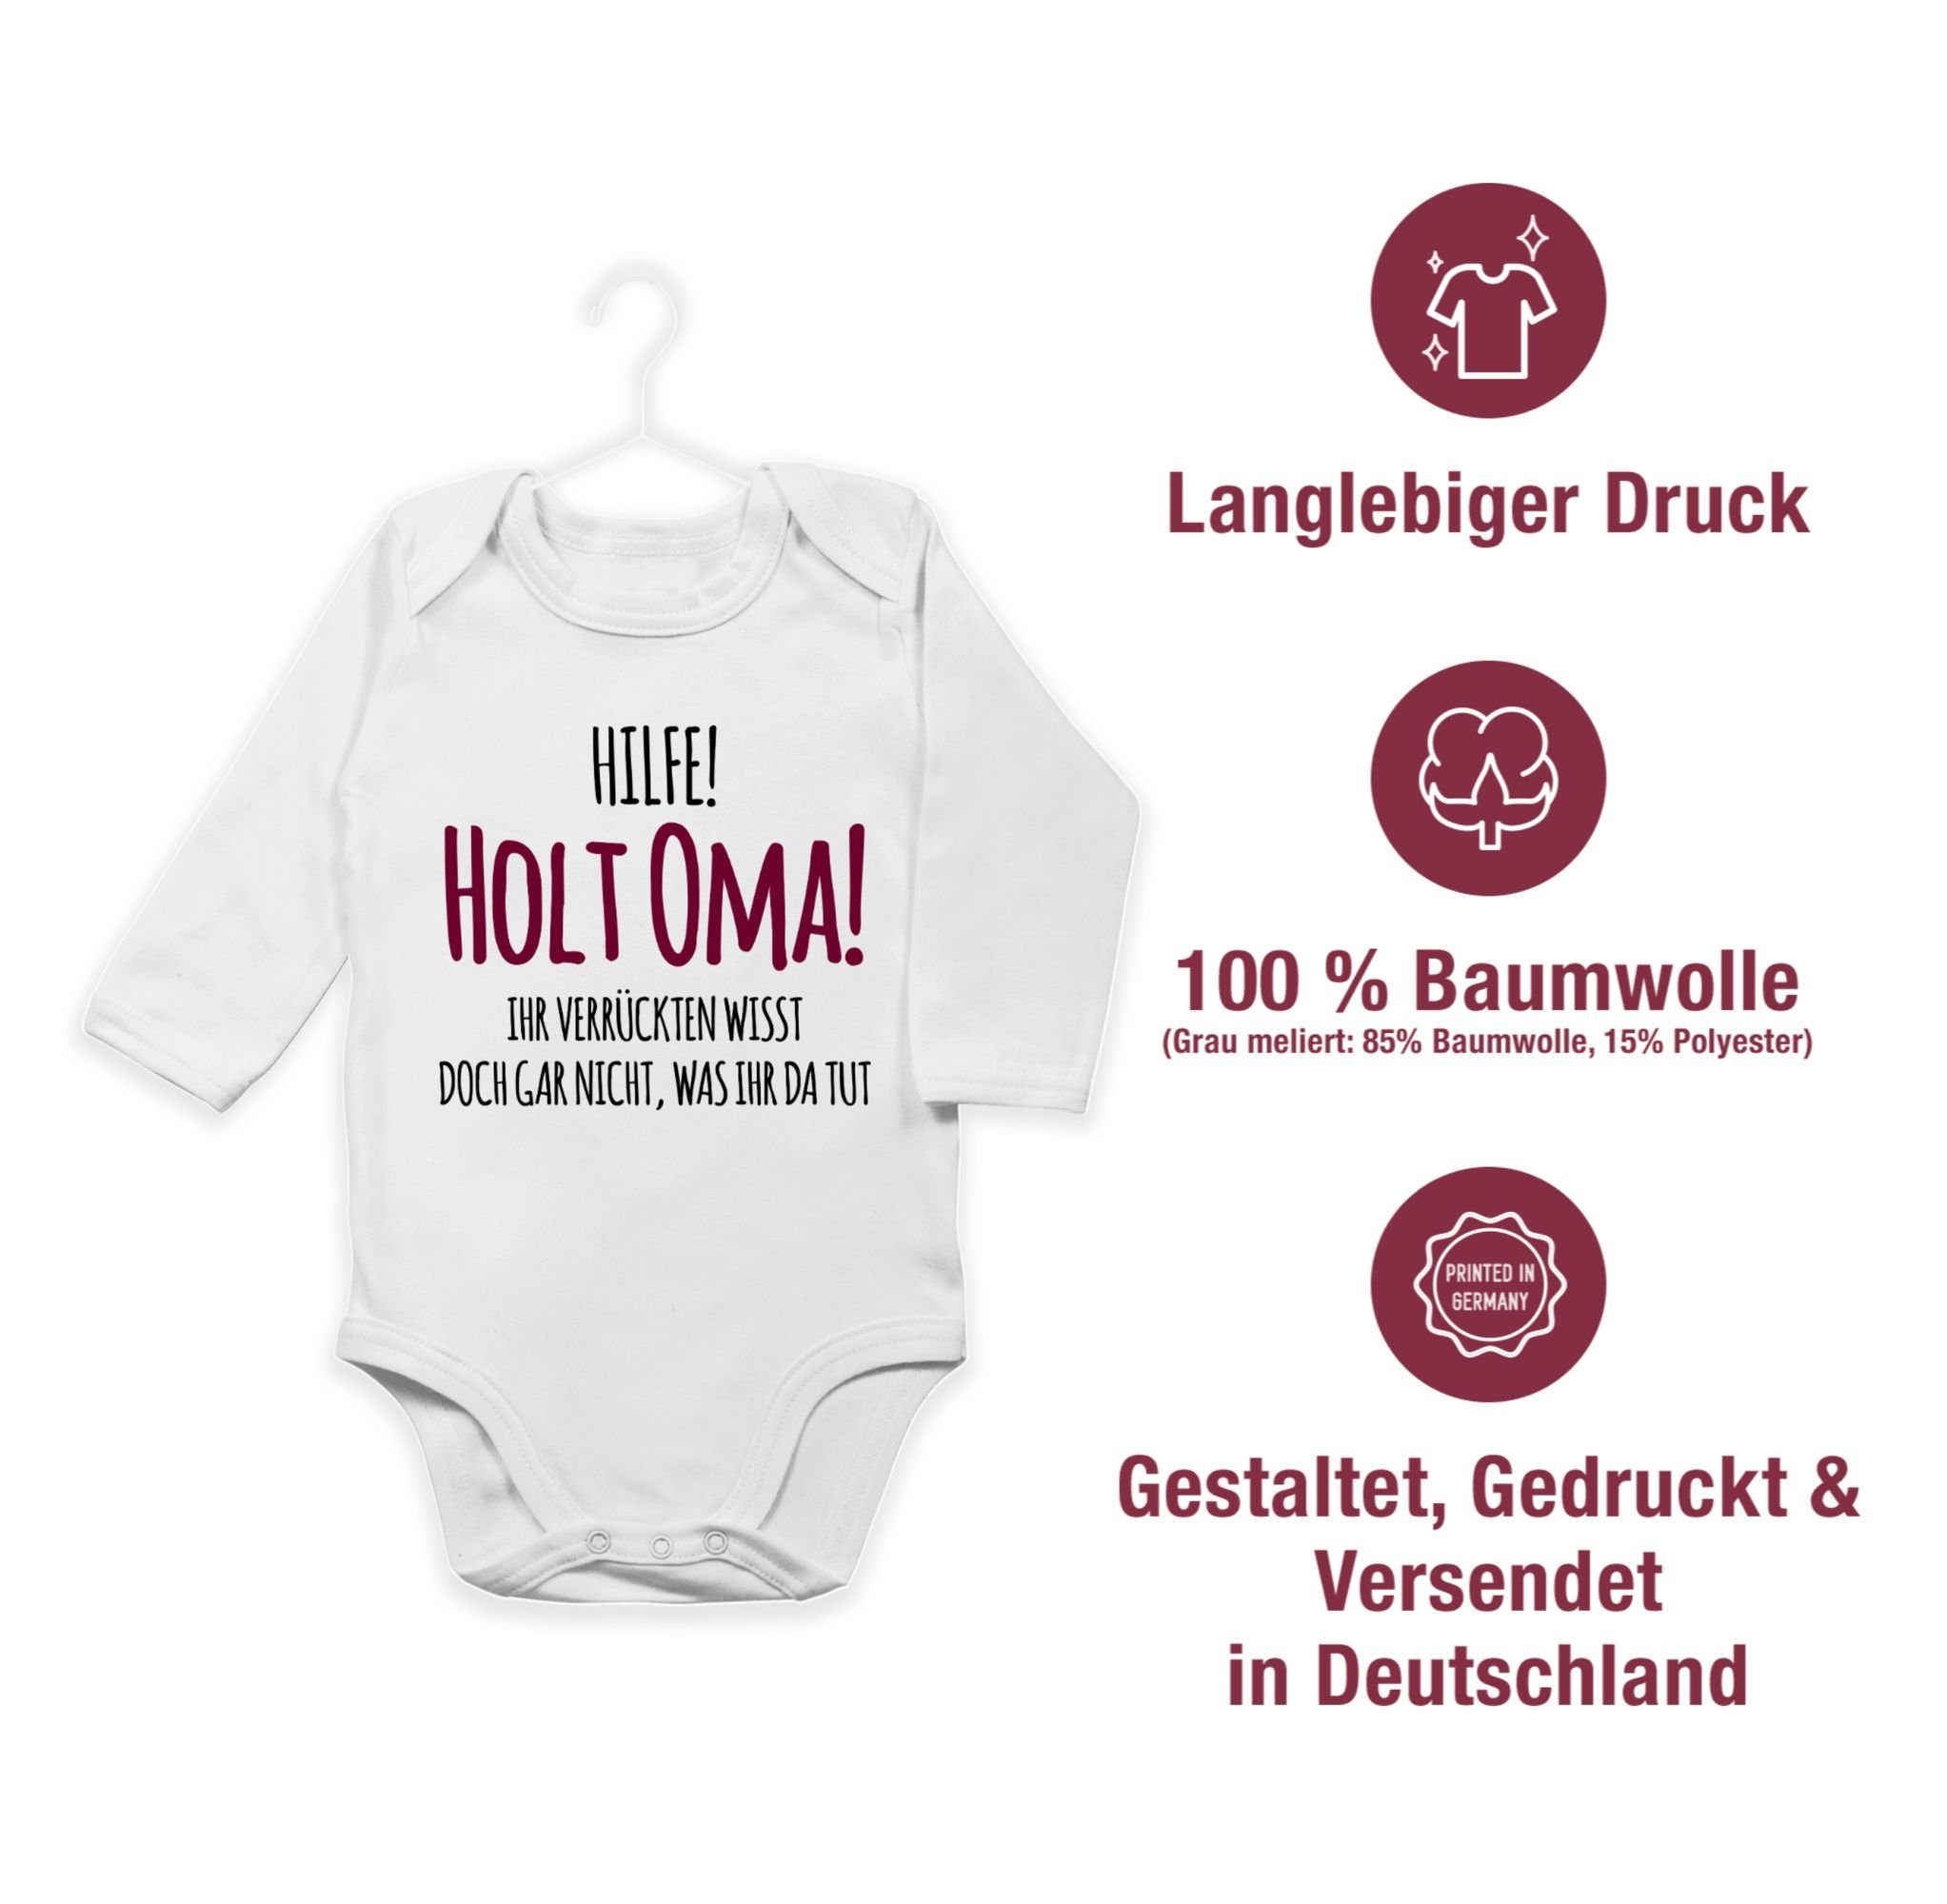 Oma Geburt Weiß Omi 1 Baby Geschenk Shirtracer - Hilfe Sprüche Holt Shirtbody